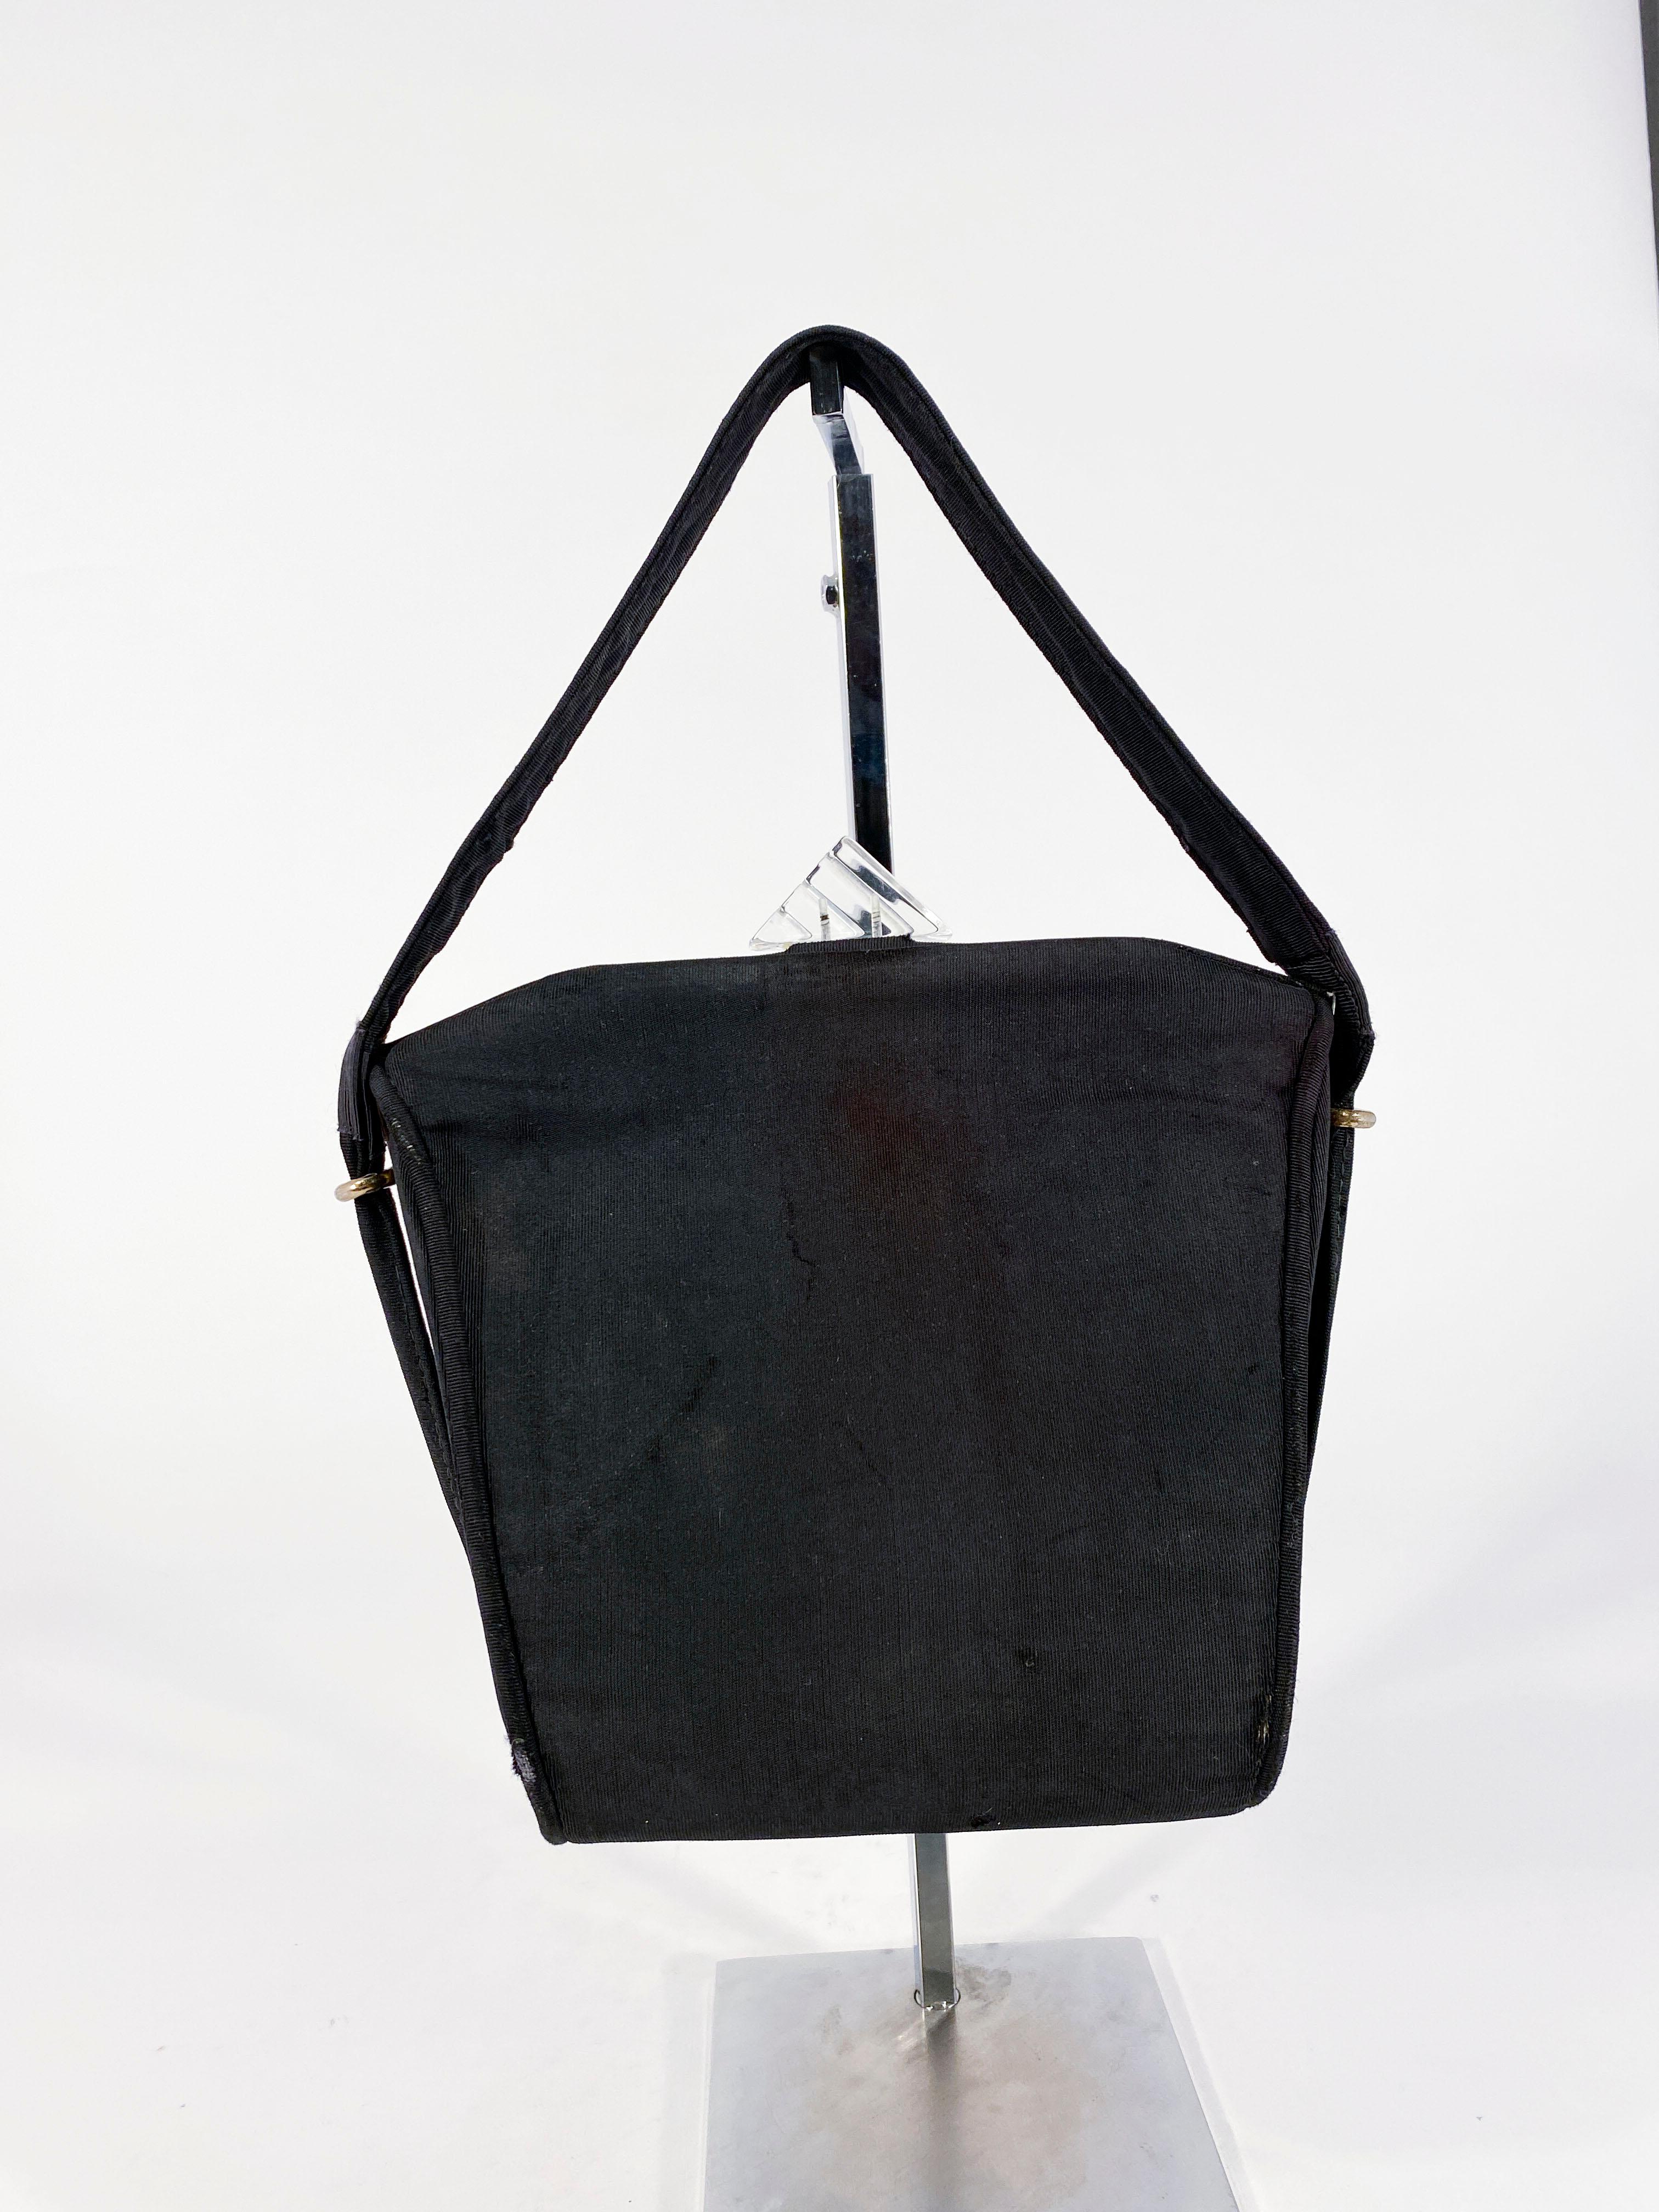 sac à main trapunto matelassé des années 1930 composé d'un sergé noir et d'une armature en laiton. Le haut du cadre est terminé par une fermeture Art Déco transparente et des poignées extra larges. L'intérieur est doublé d'une matière beige